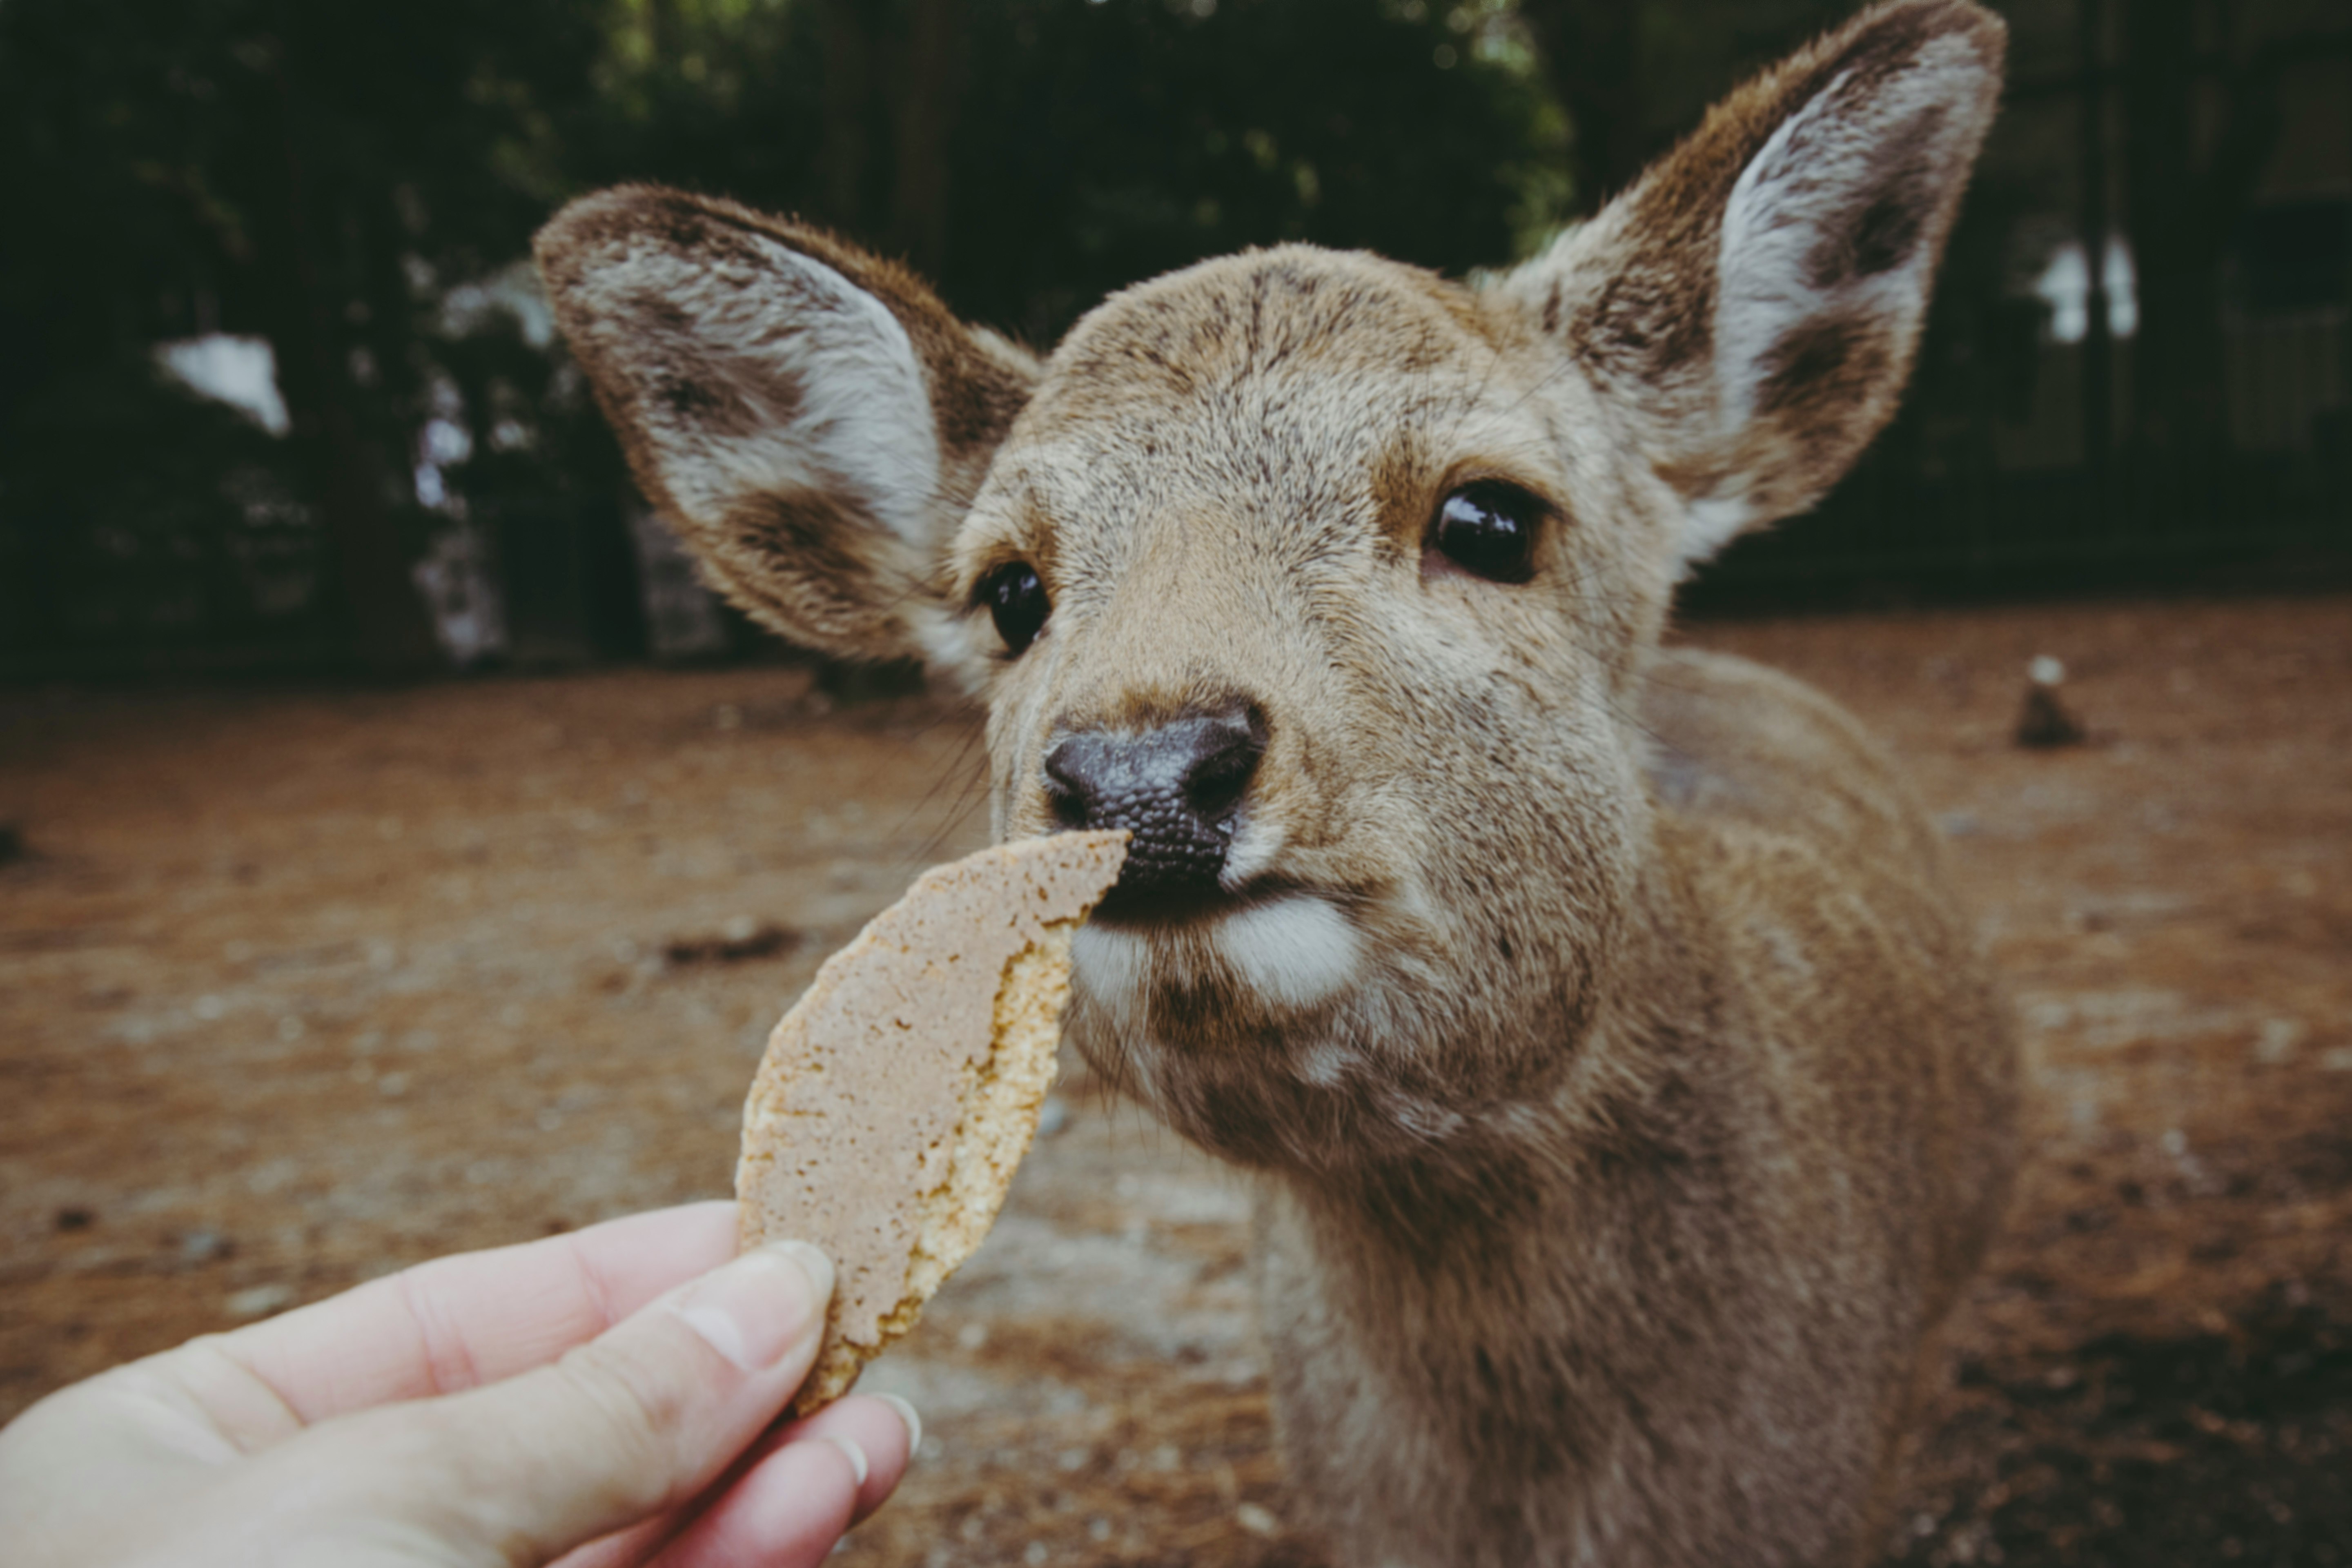 brown deer eating brown bread during daytime